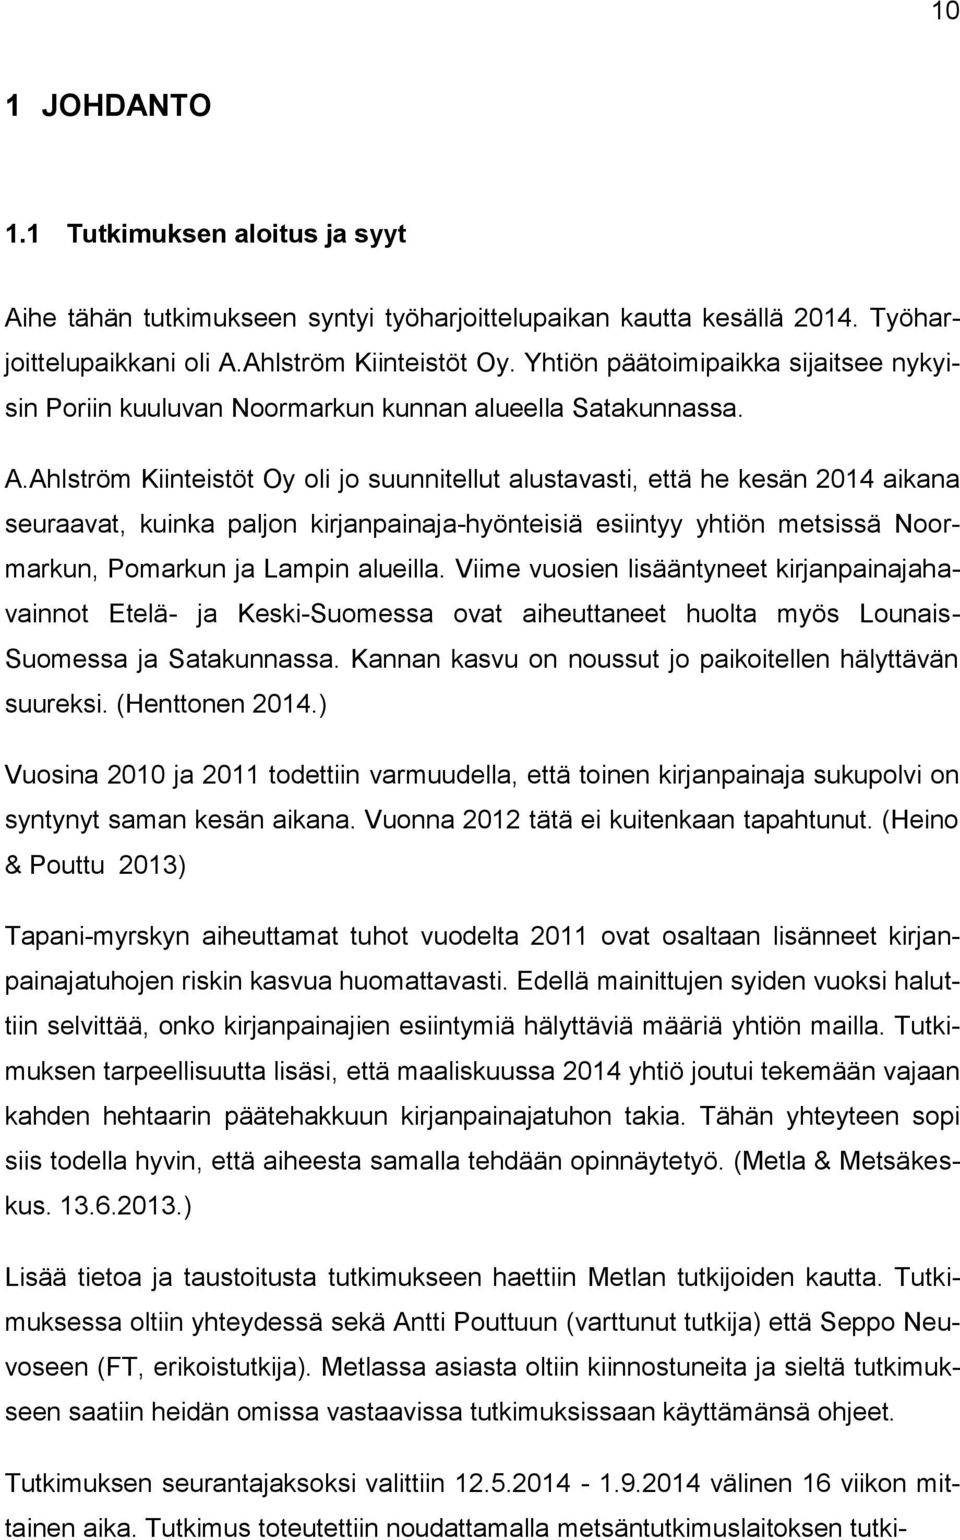 Ahlström Kiinteistöt Oy oli jo suunnitellut alustavasti, että he kesän 2014 aikana seuraavat, kuinka paljon kirjanpainaja-hyönteisiä esiintyy yhtiön metsissä Noormarkun, Pomarkun ja Lampin alueilla.